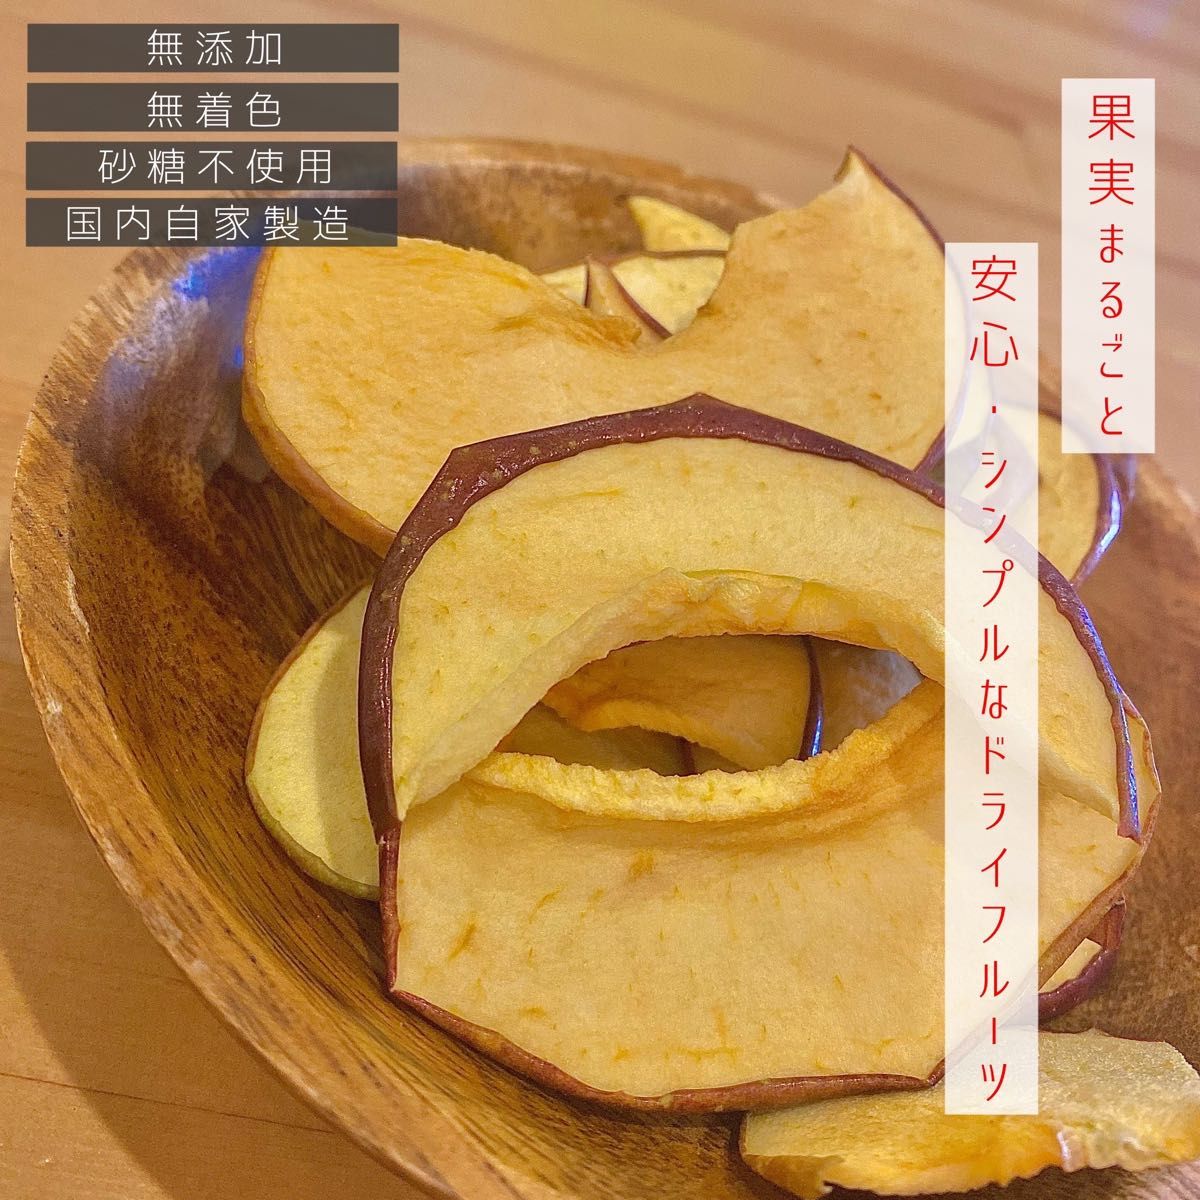 【3袋】青森県産りんごチップス サンふじ 120g 無添加 ドライフルーツ